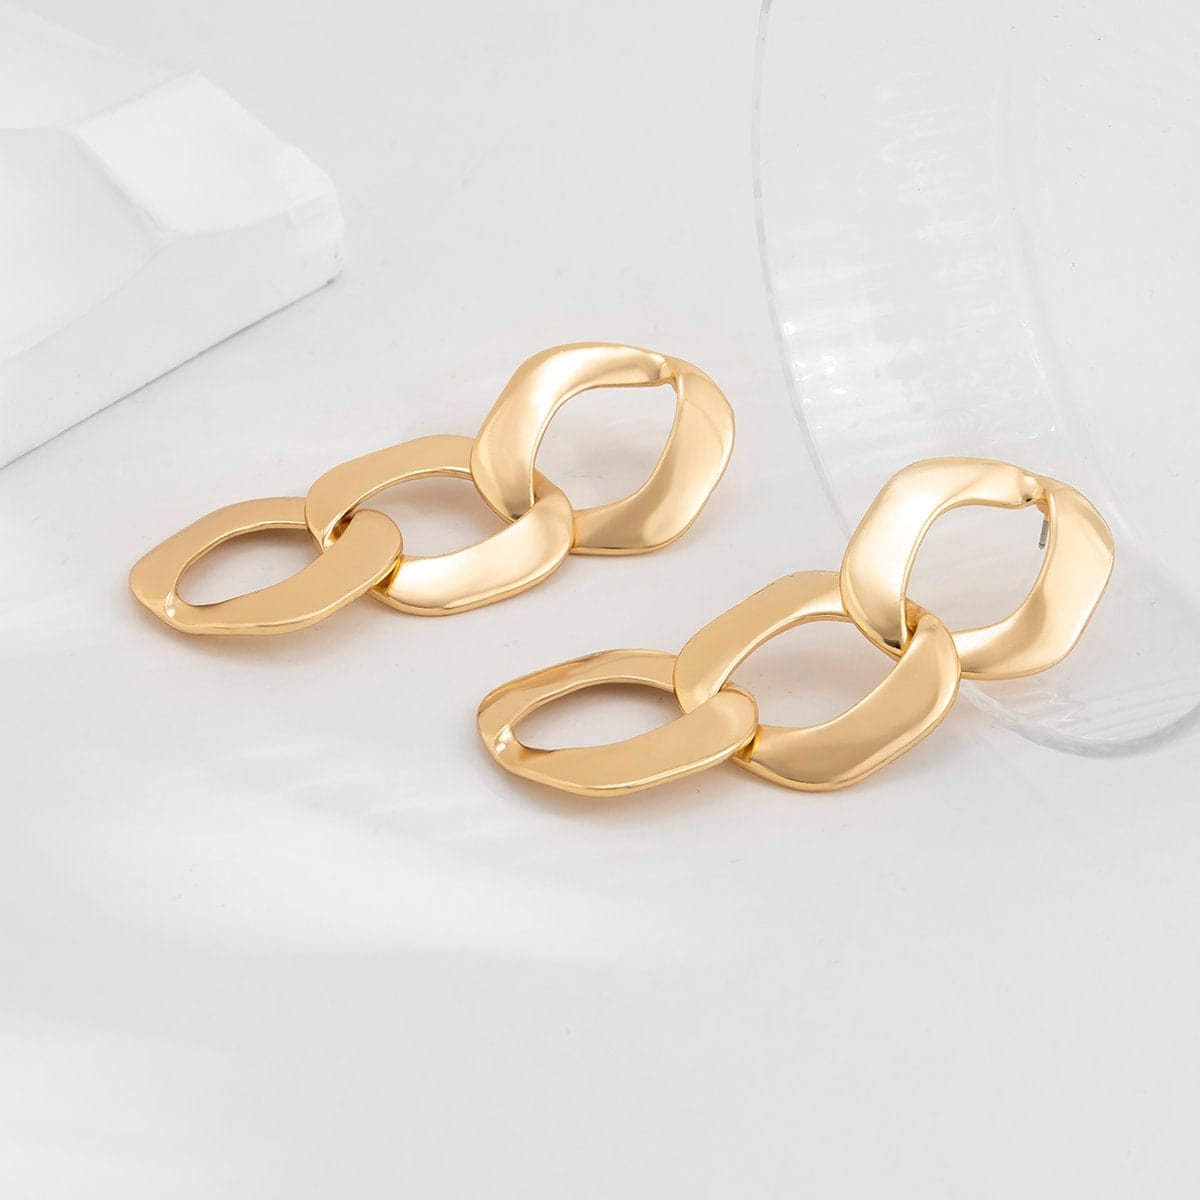 Geometric Gold Silver Tone Dangle Triplet Chain Earrings - ArtGalleryZen